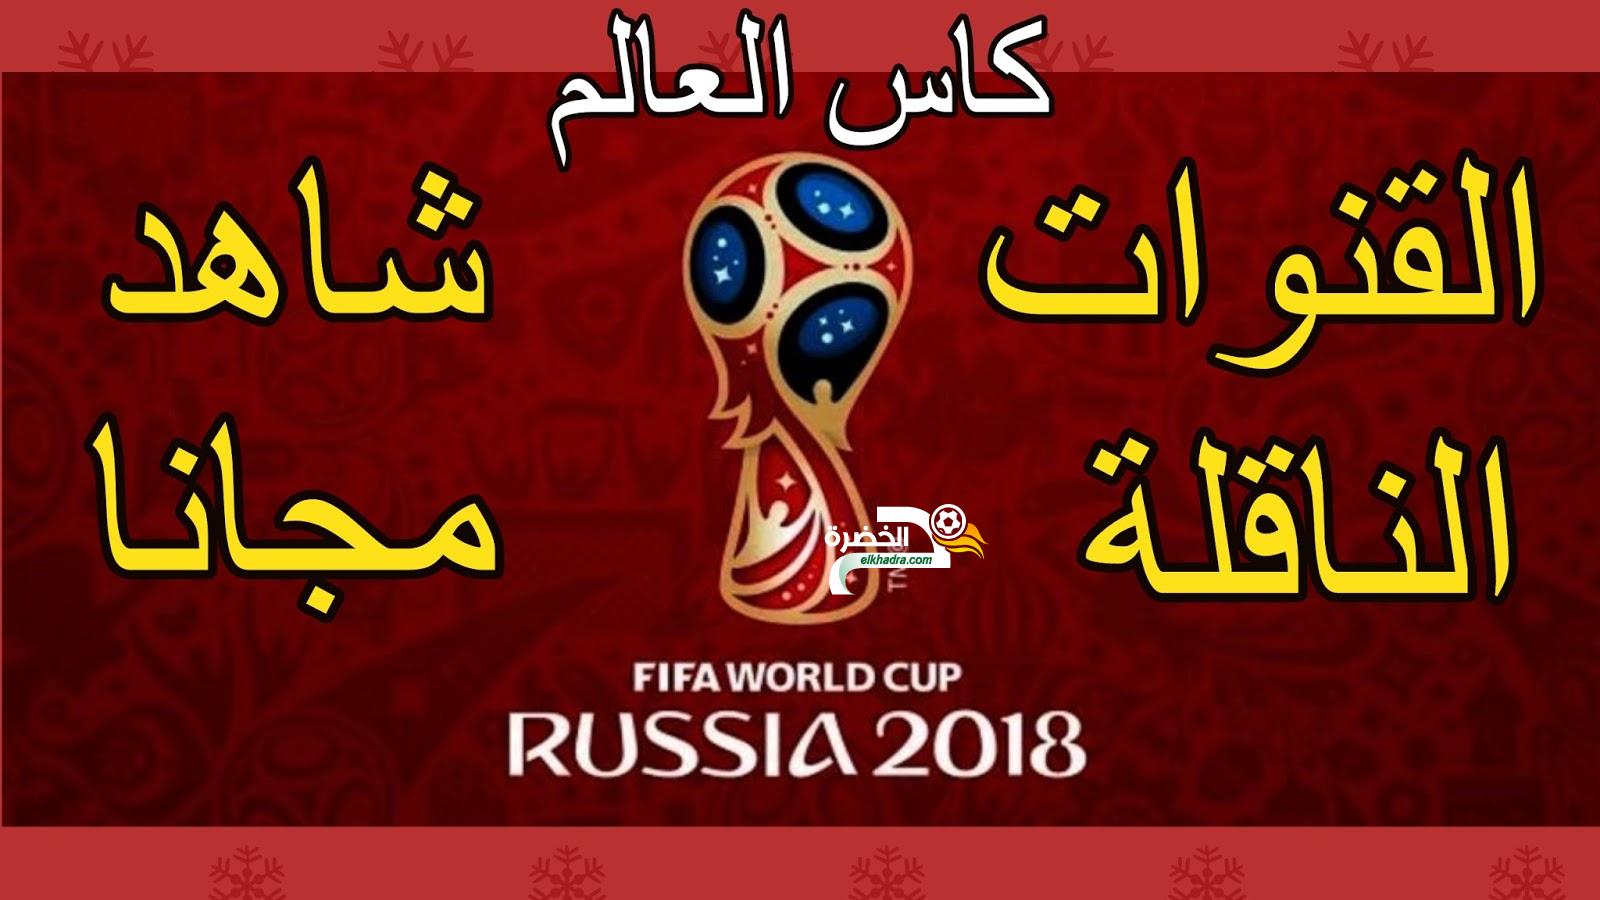 القنوات الناقلة لكأس العالم روسيا 2018 مجانا و مواعيد المباريات 1